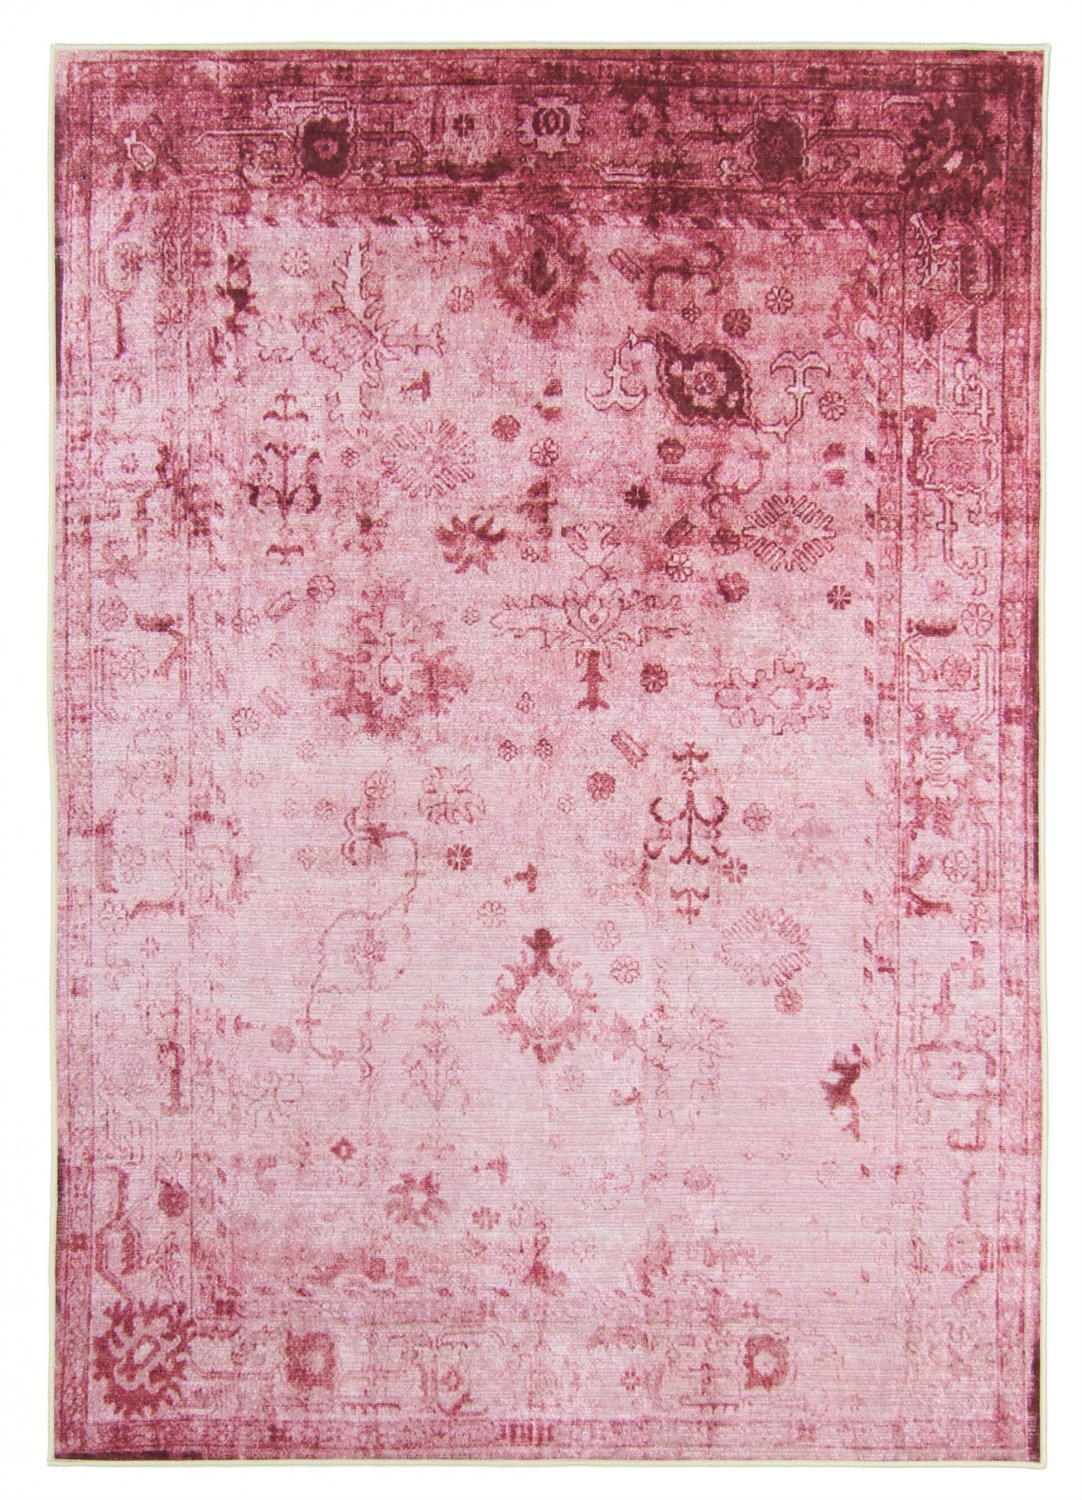 Wilton-Teppich - Violetta (rosa)